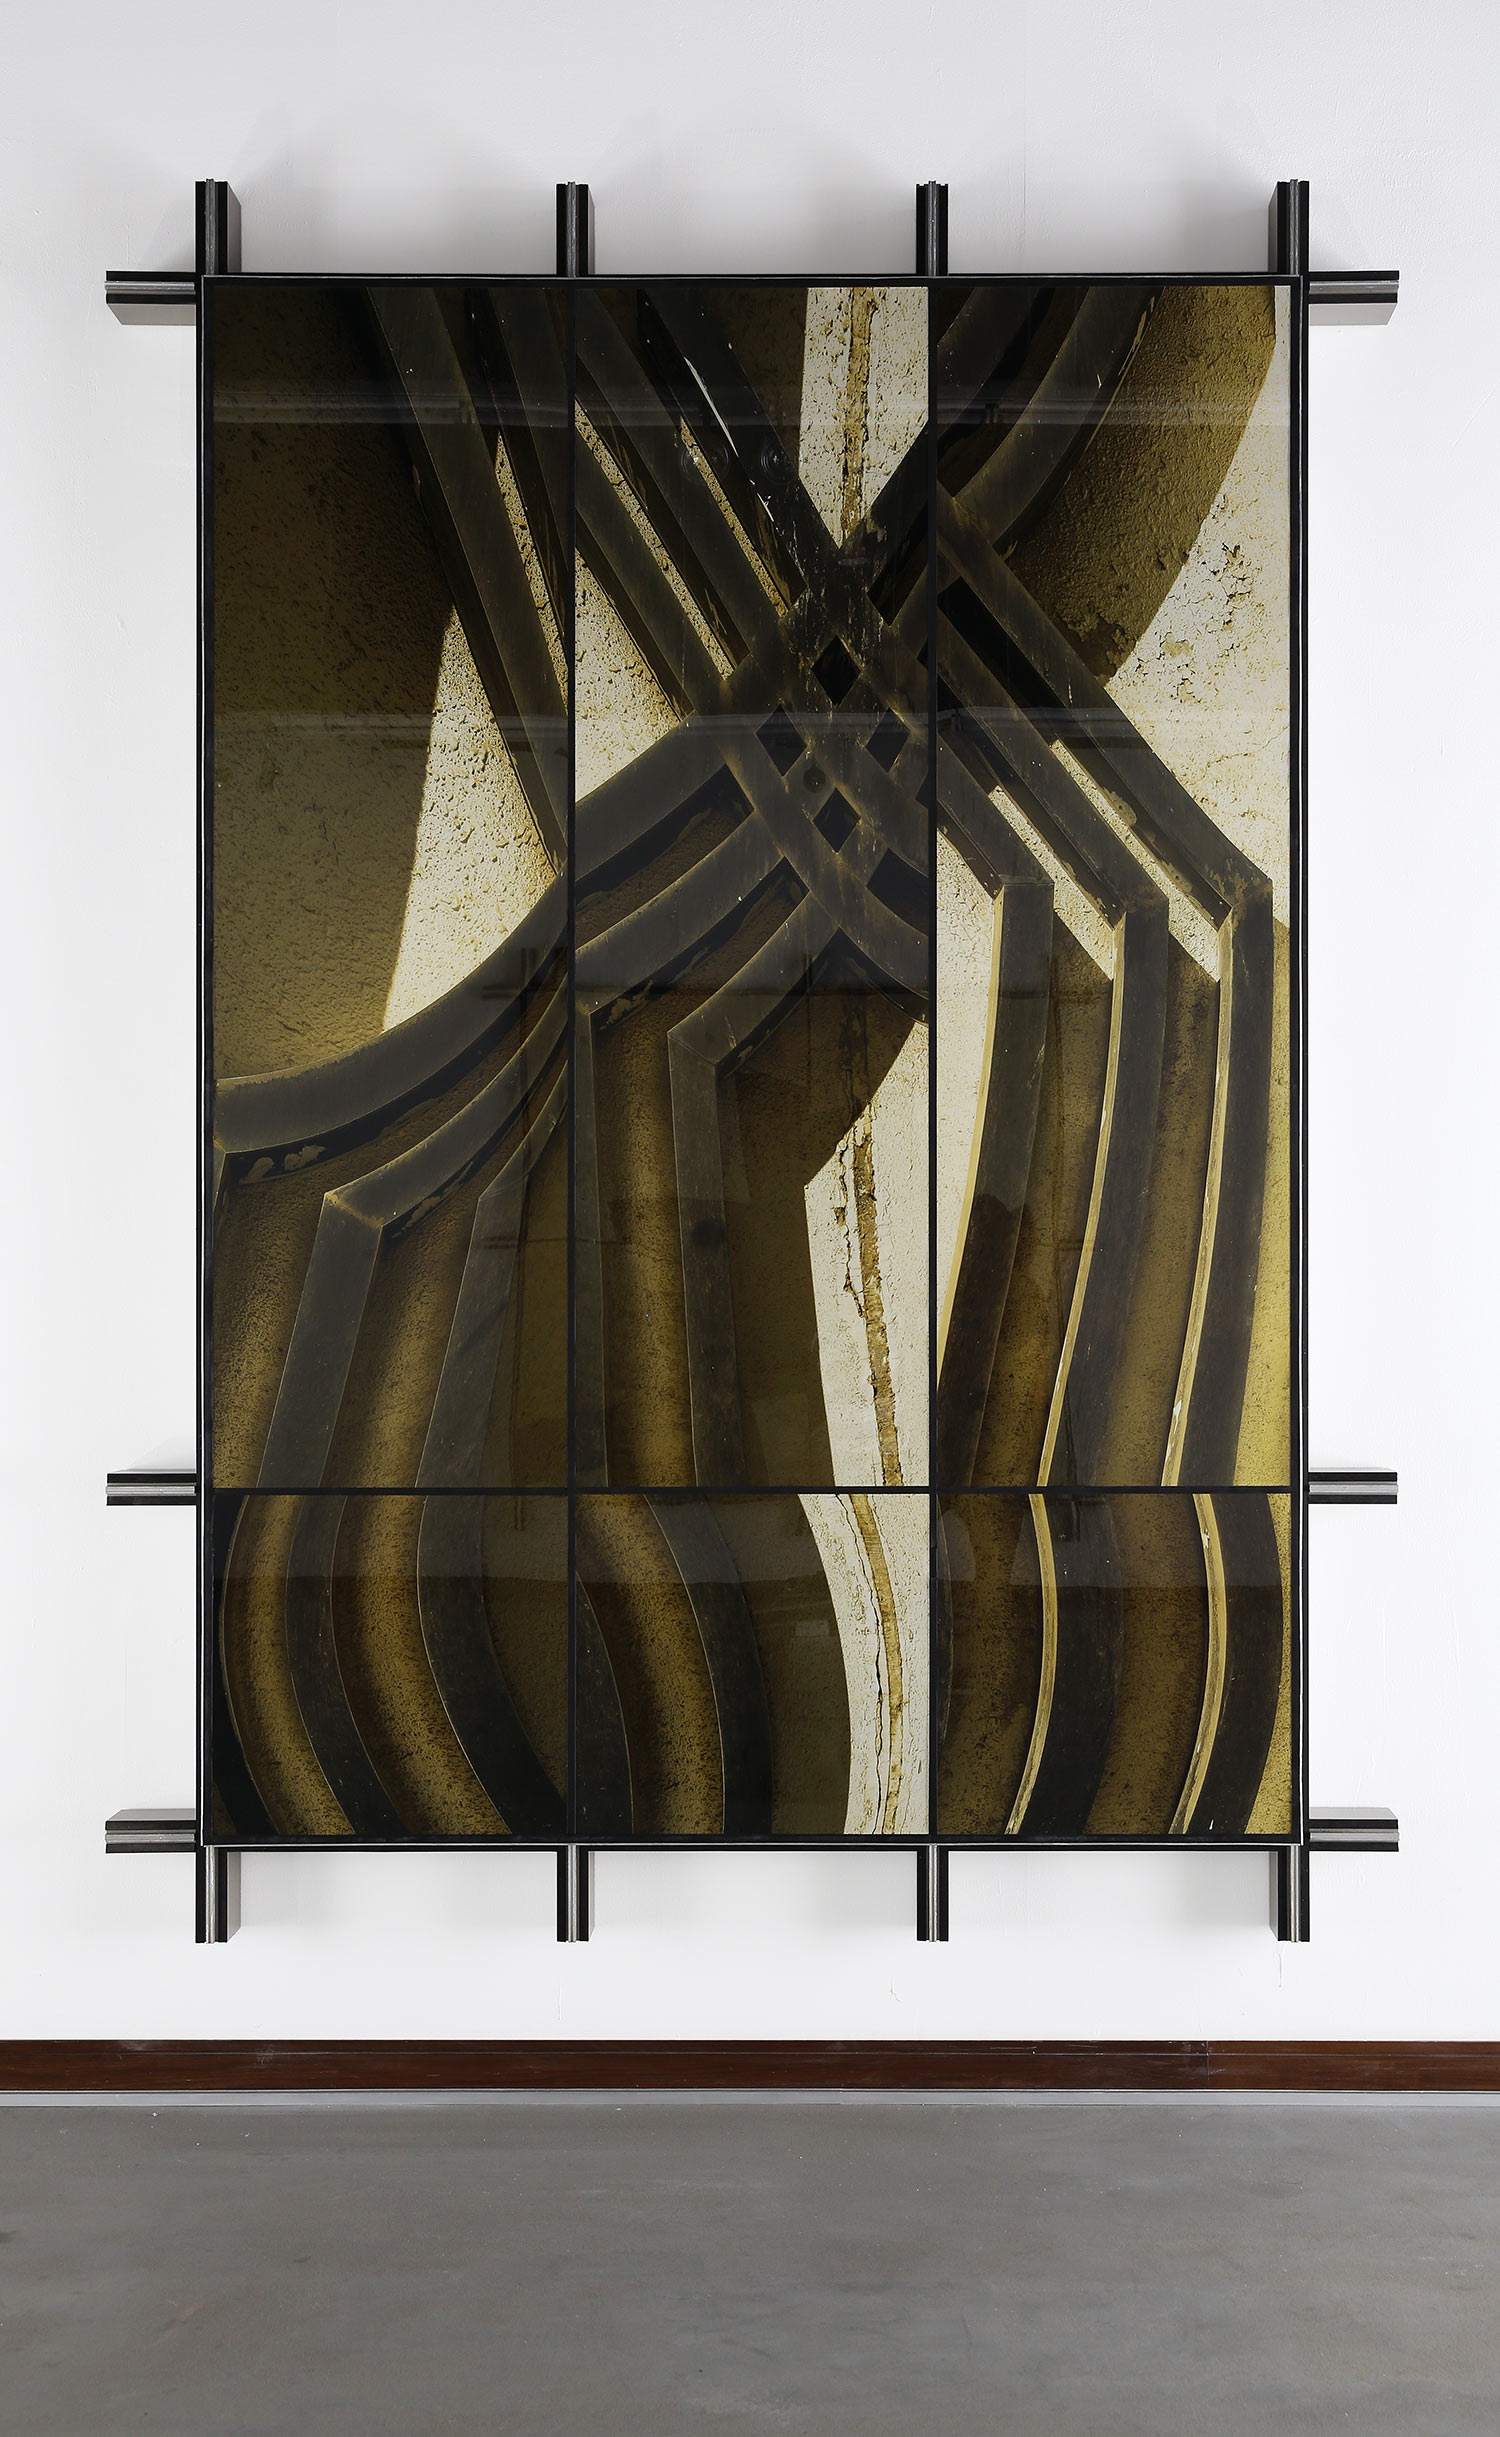   Facade No.2 , 2014  297 cm x 220 cm x 14 cm 